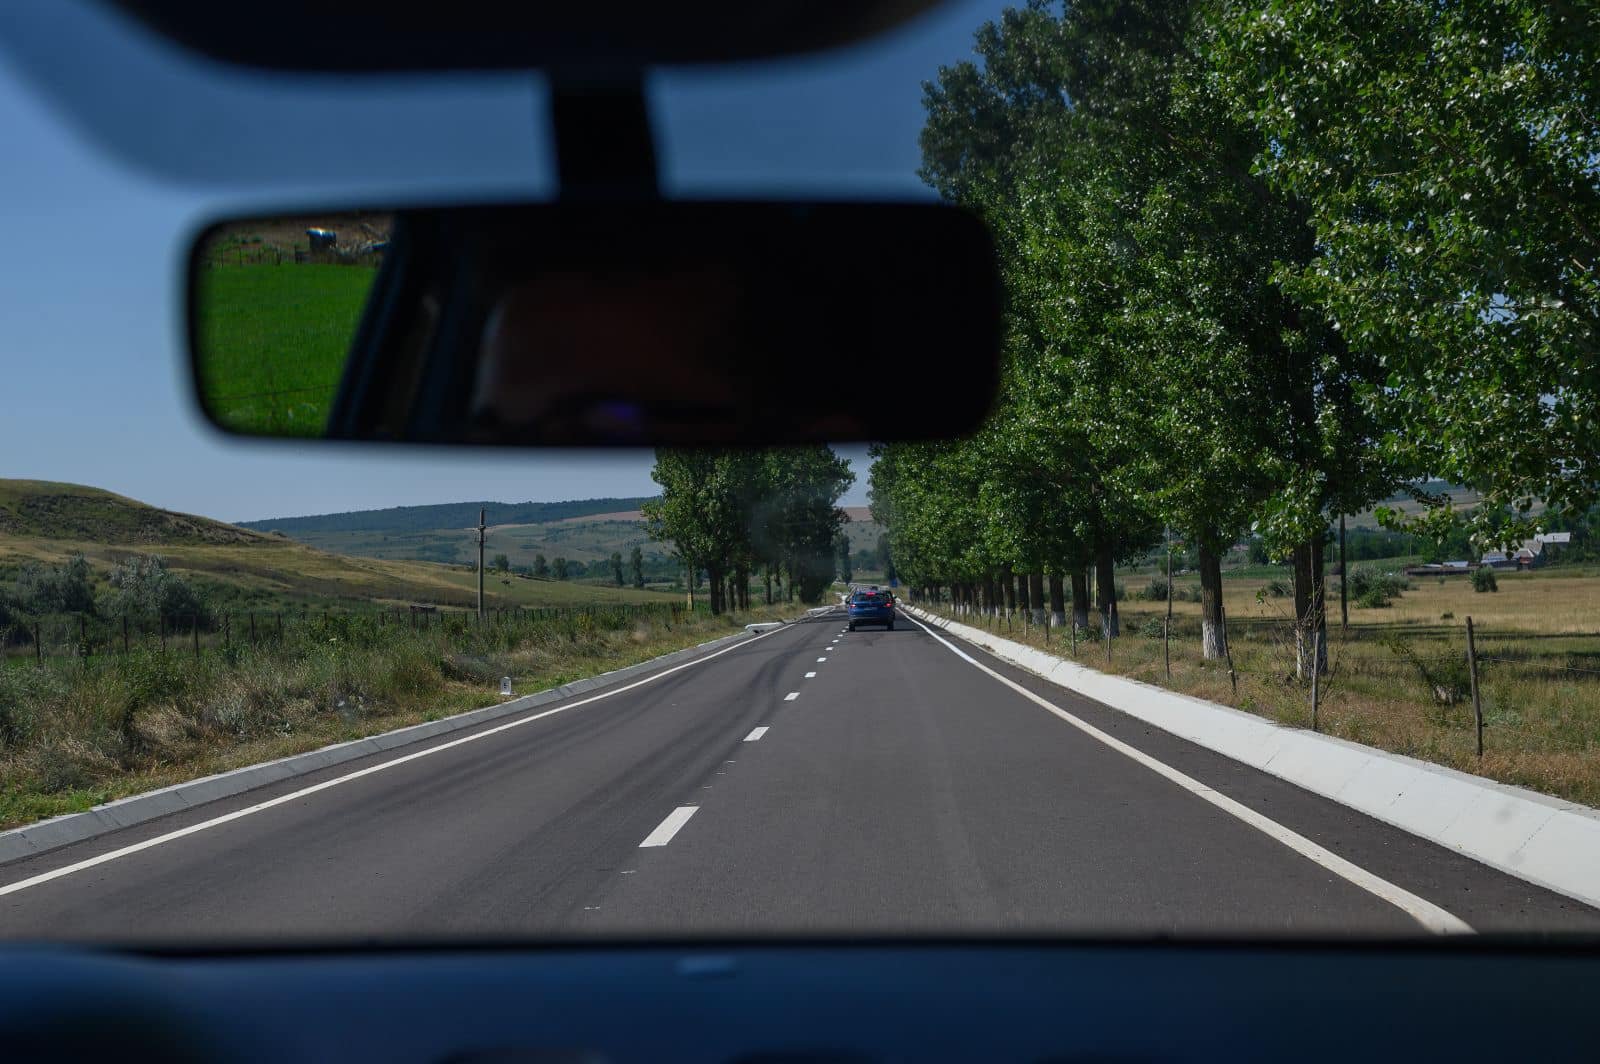  A fost finalizată axa rutieră Iași Plugari Botoșani, după 13 ani. Este cel mai scurt drum dintre cele două orașe